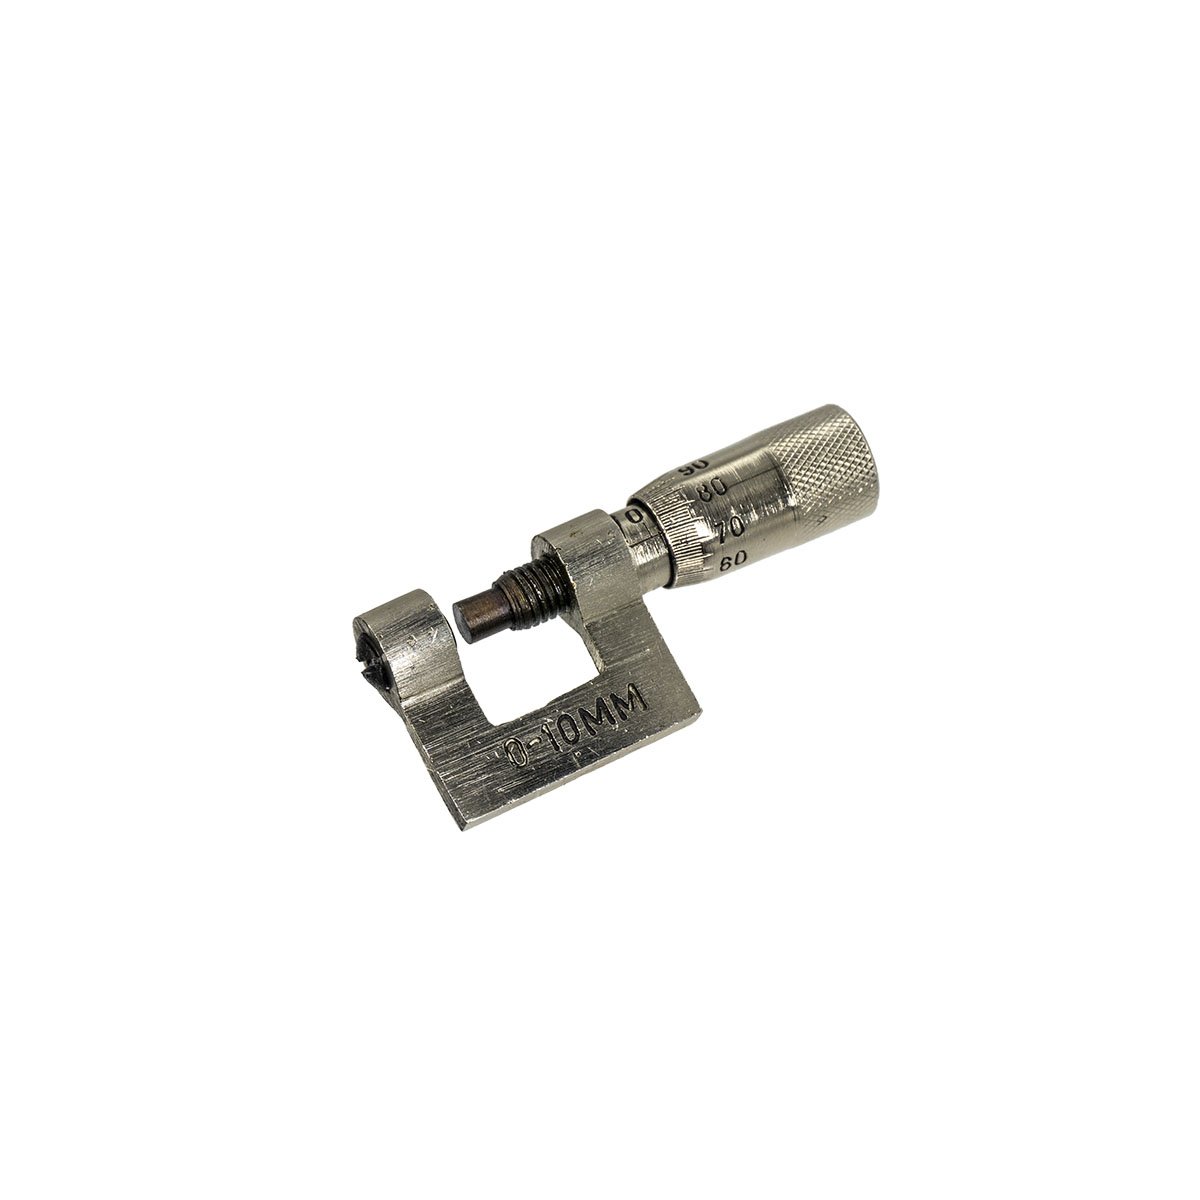 5310 Senbang Mini Mekanik Mikrometre 0-10 mm